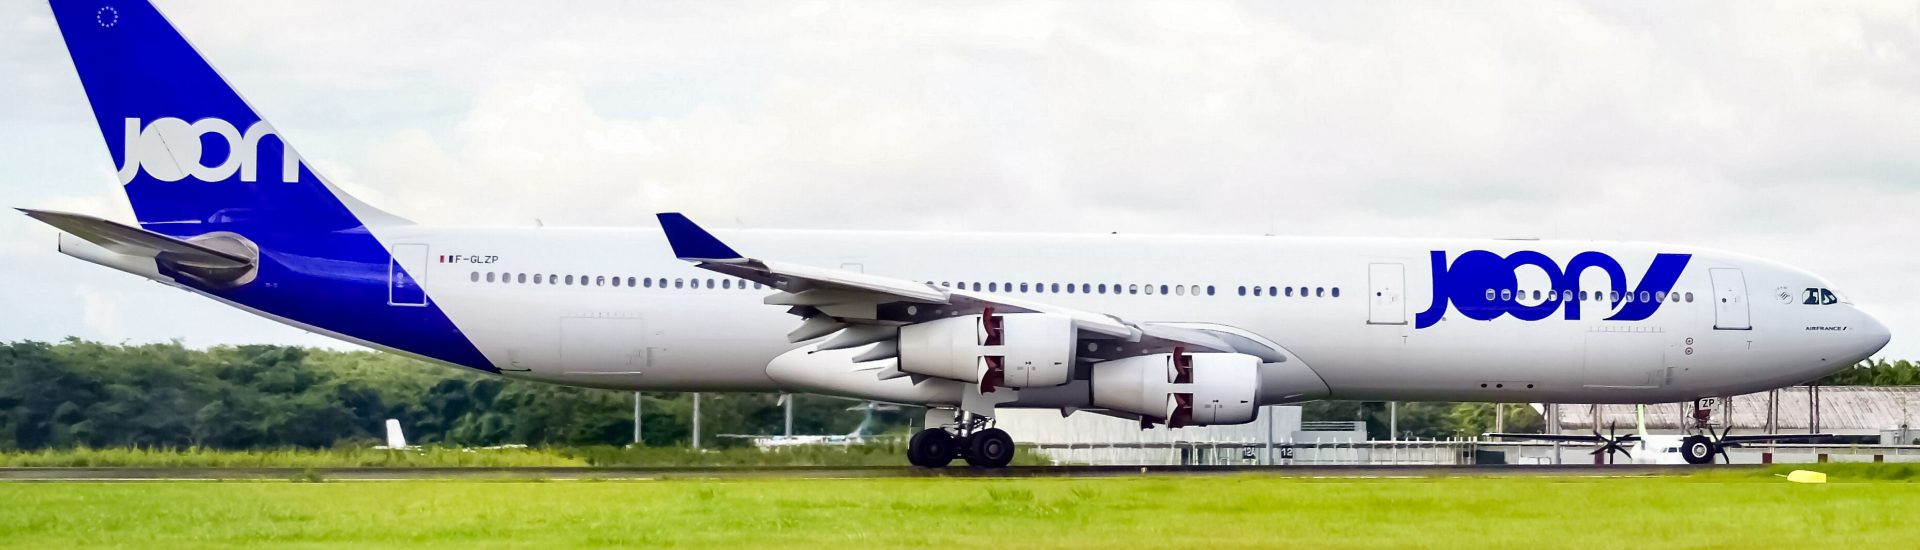 A340-300 Air France F-GLZP